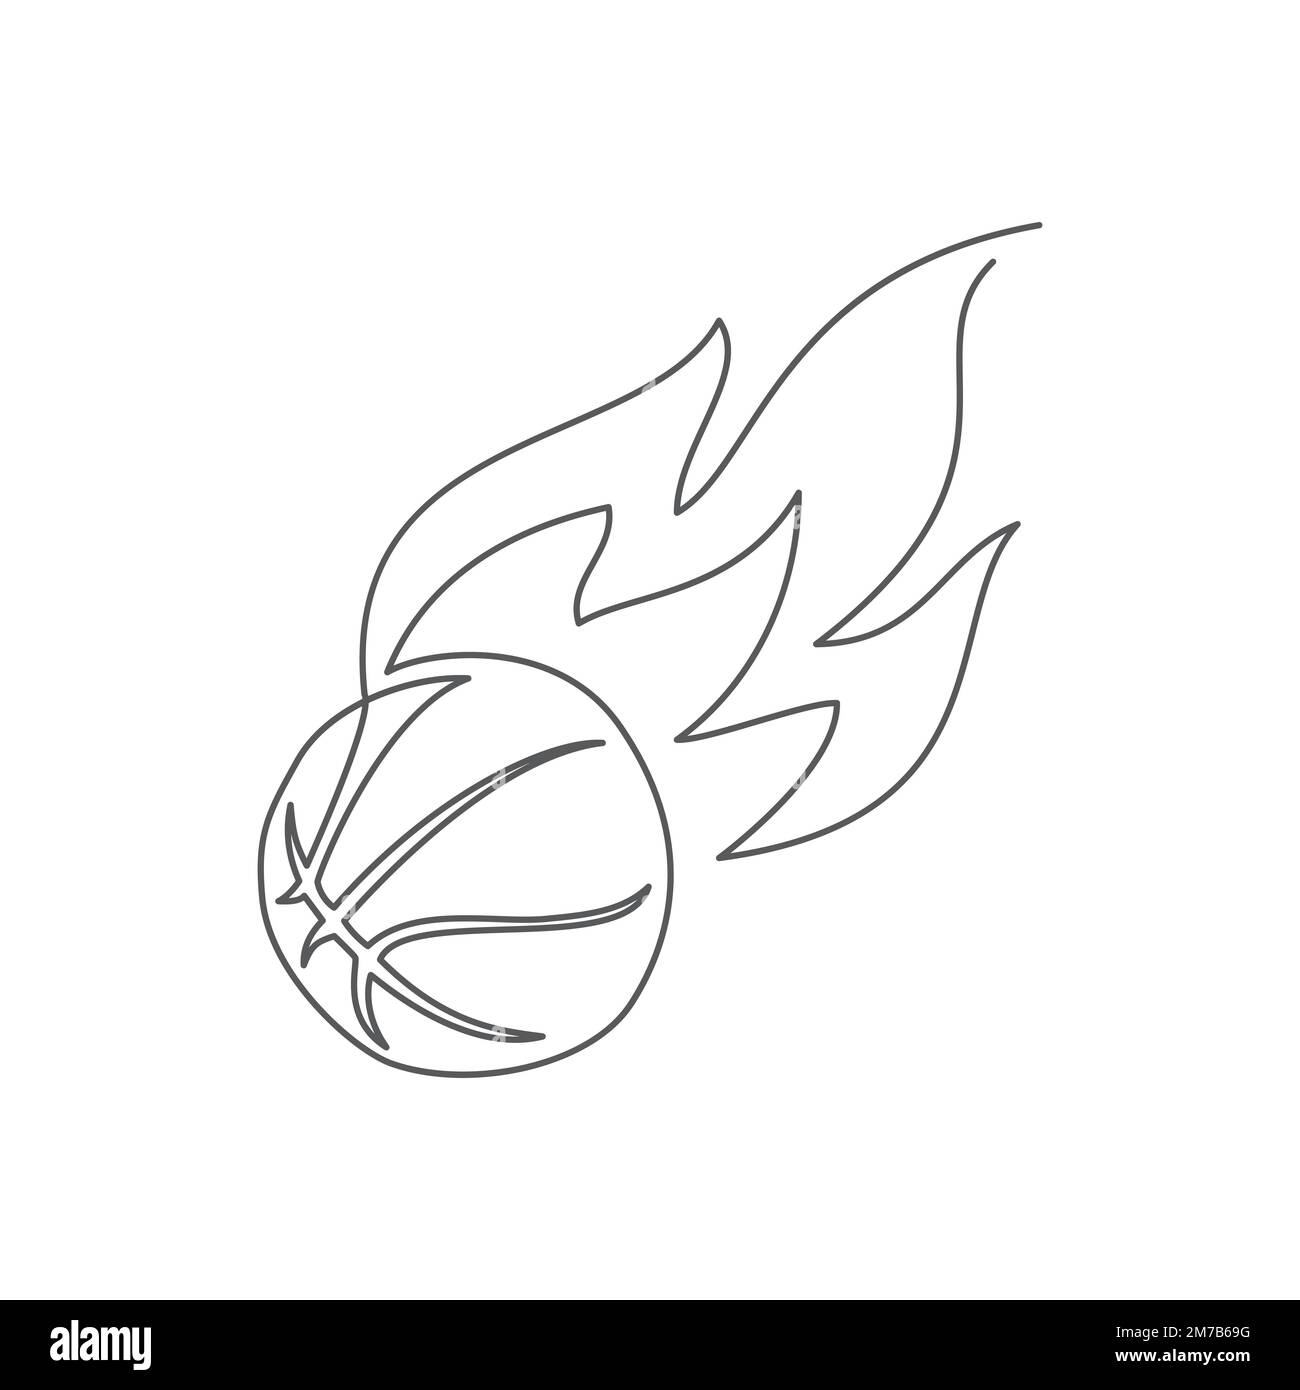 Basketball-Zeichnung mit einer Linie isoliert auf Weiß Stock Vektor